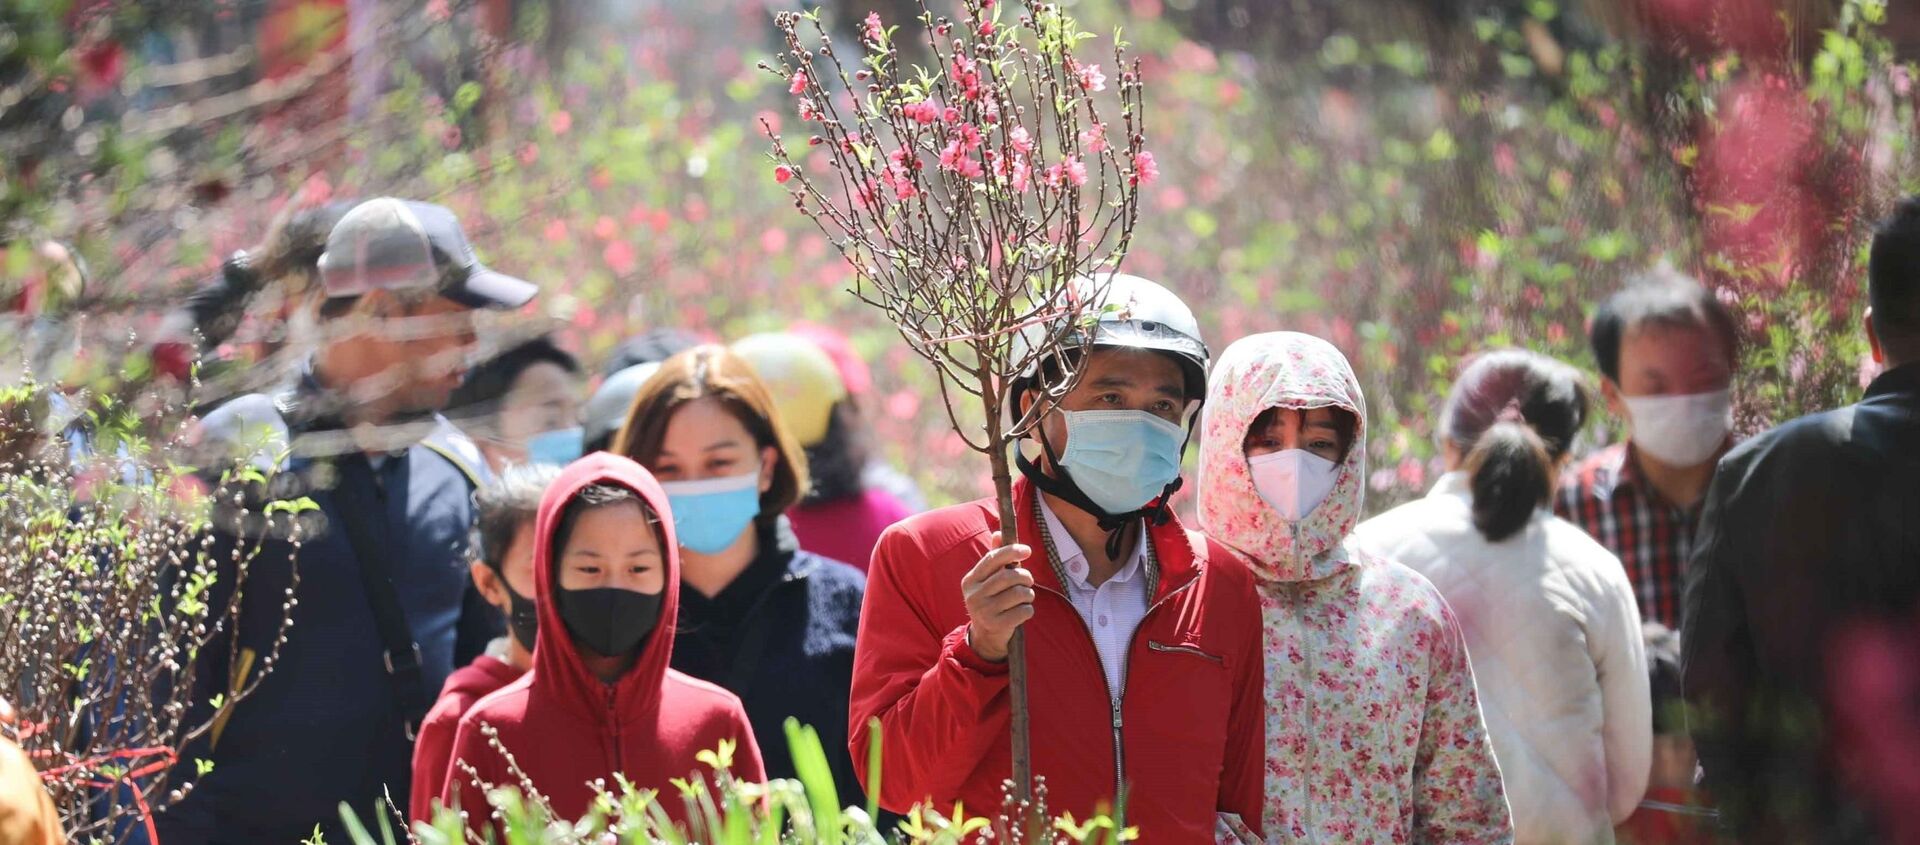 Người dân đi chợ hoa Tết truyền thống trong ngày 29 Tết đều thực hiện nghiêm túc việc đeo khẩu trang để phòng chống dịch. - Sputnik Việt Nam, 1920, 10.02.2021